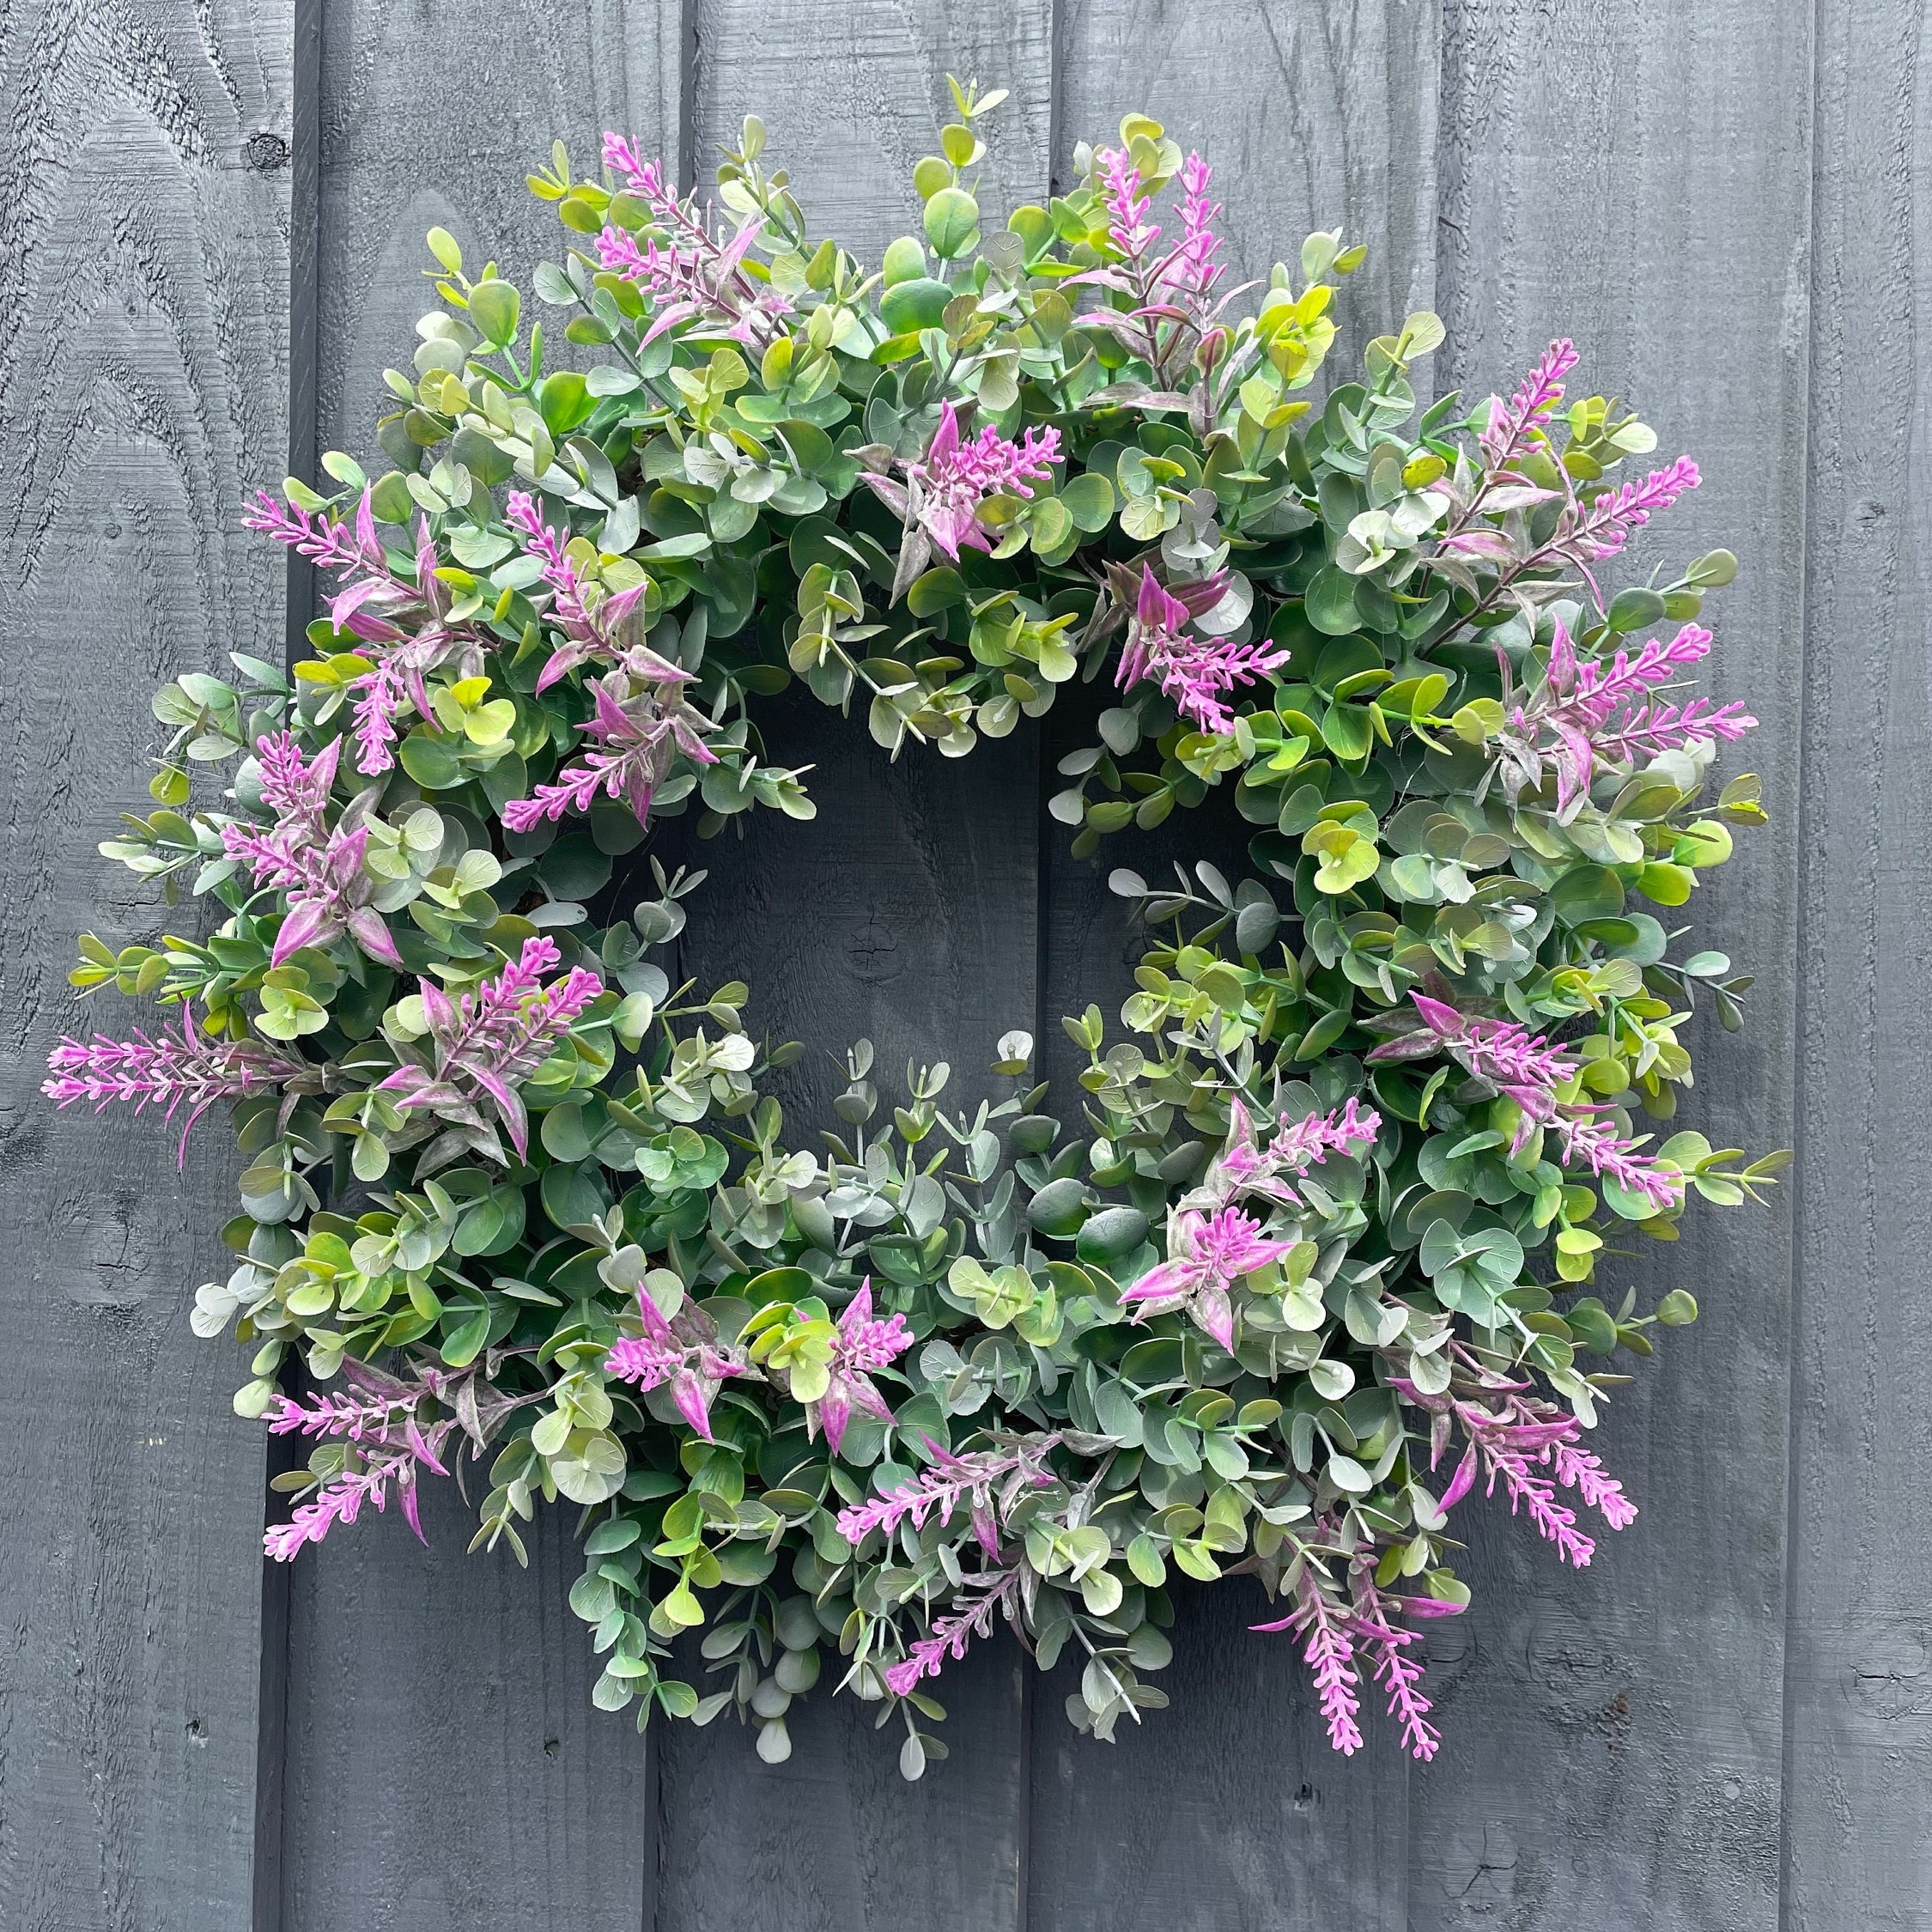 Lanender wreathsdoor wreaths/wreaths for front door/summer door